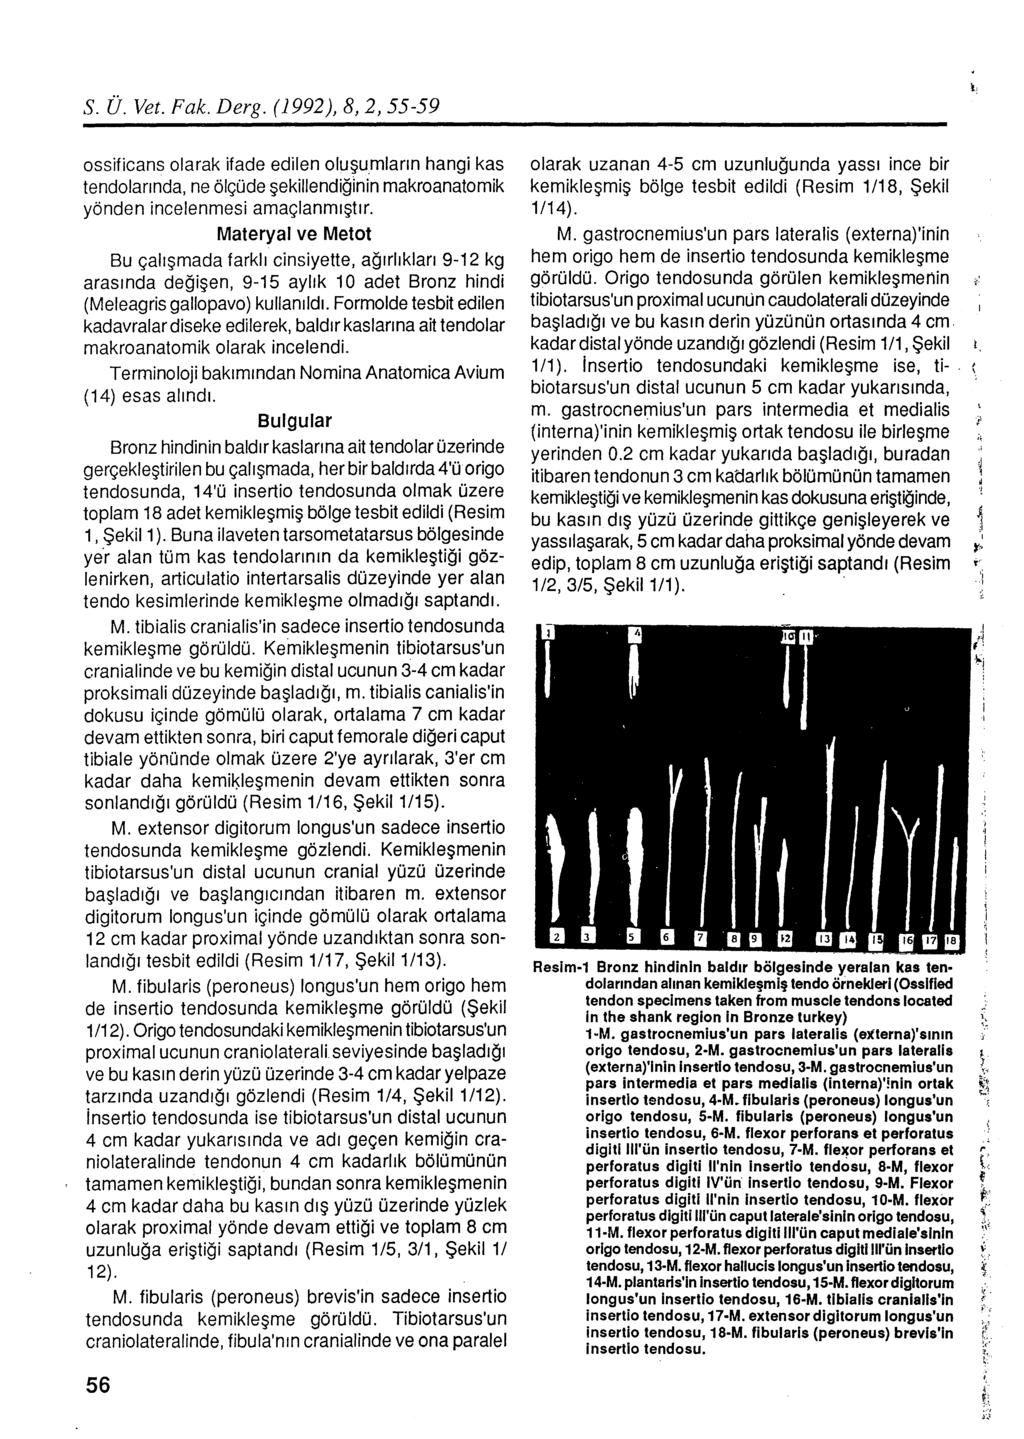 S. Ü. Vet. Fak. Derg. (1992), 8, 2, 55-59 ossificans olarak ifade edilen oluşu_mların hangi kas tendoları nda, ne ölçüde şekillendiğinin makroanatomik yönden incelenmesi amaçlanmıştır.